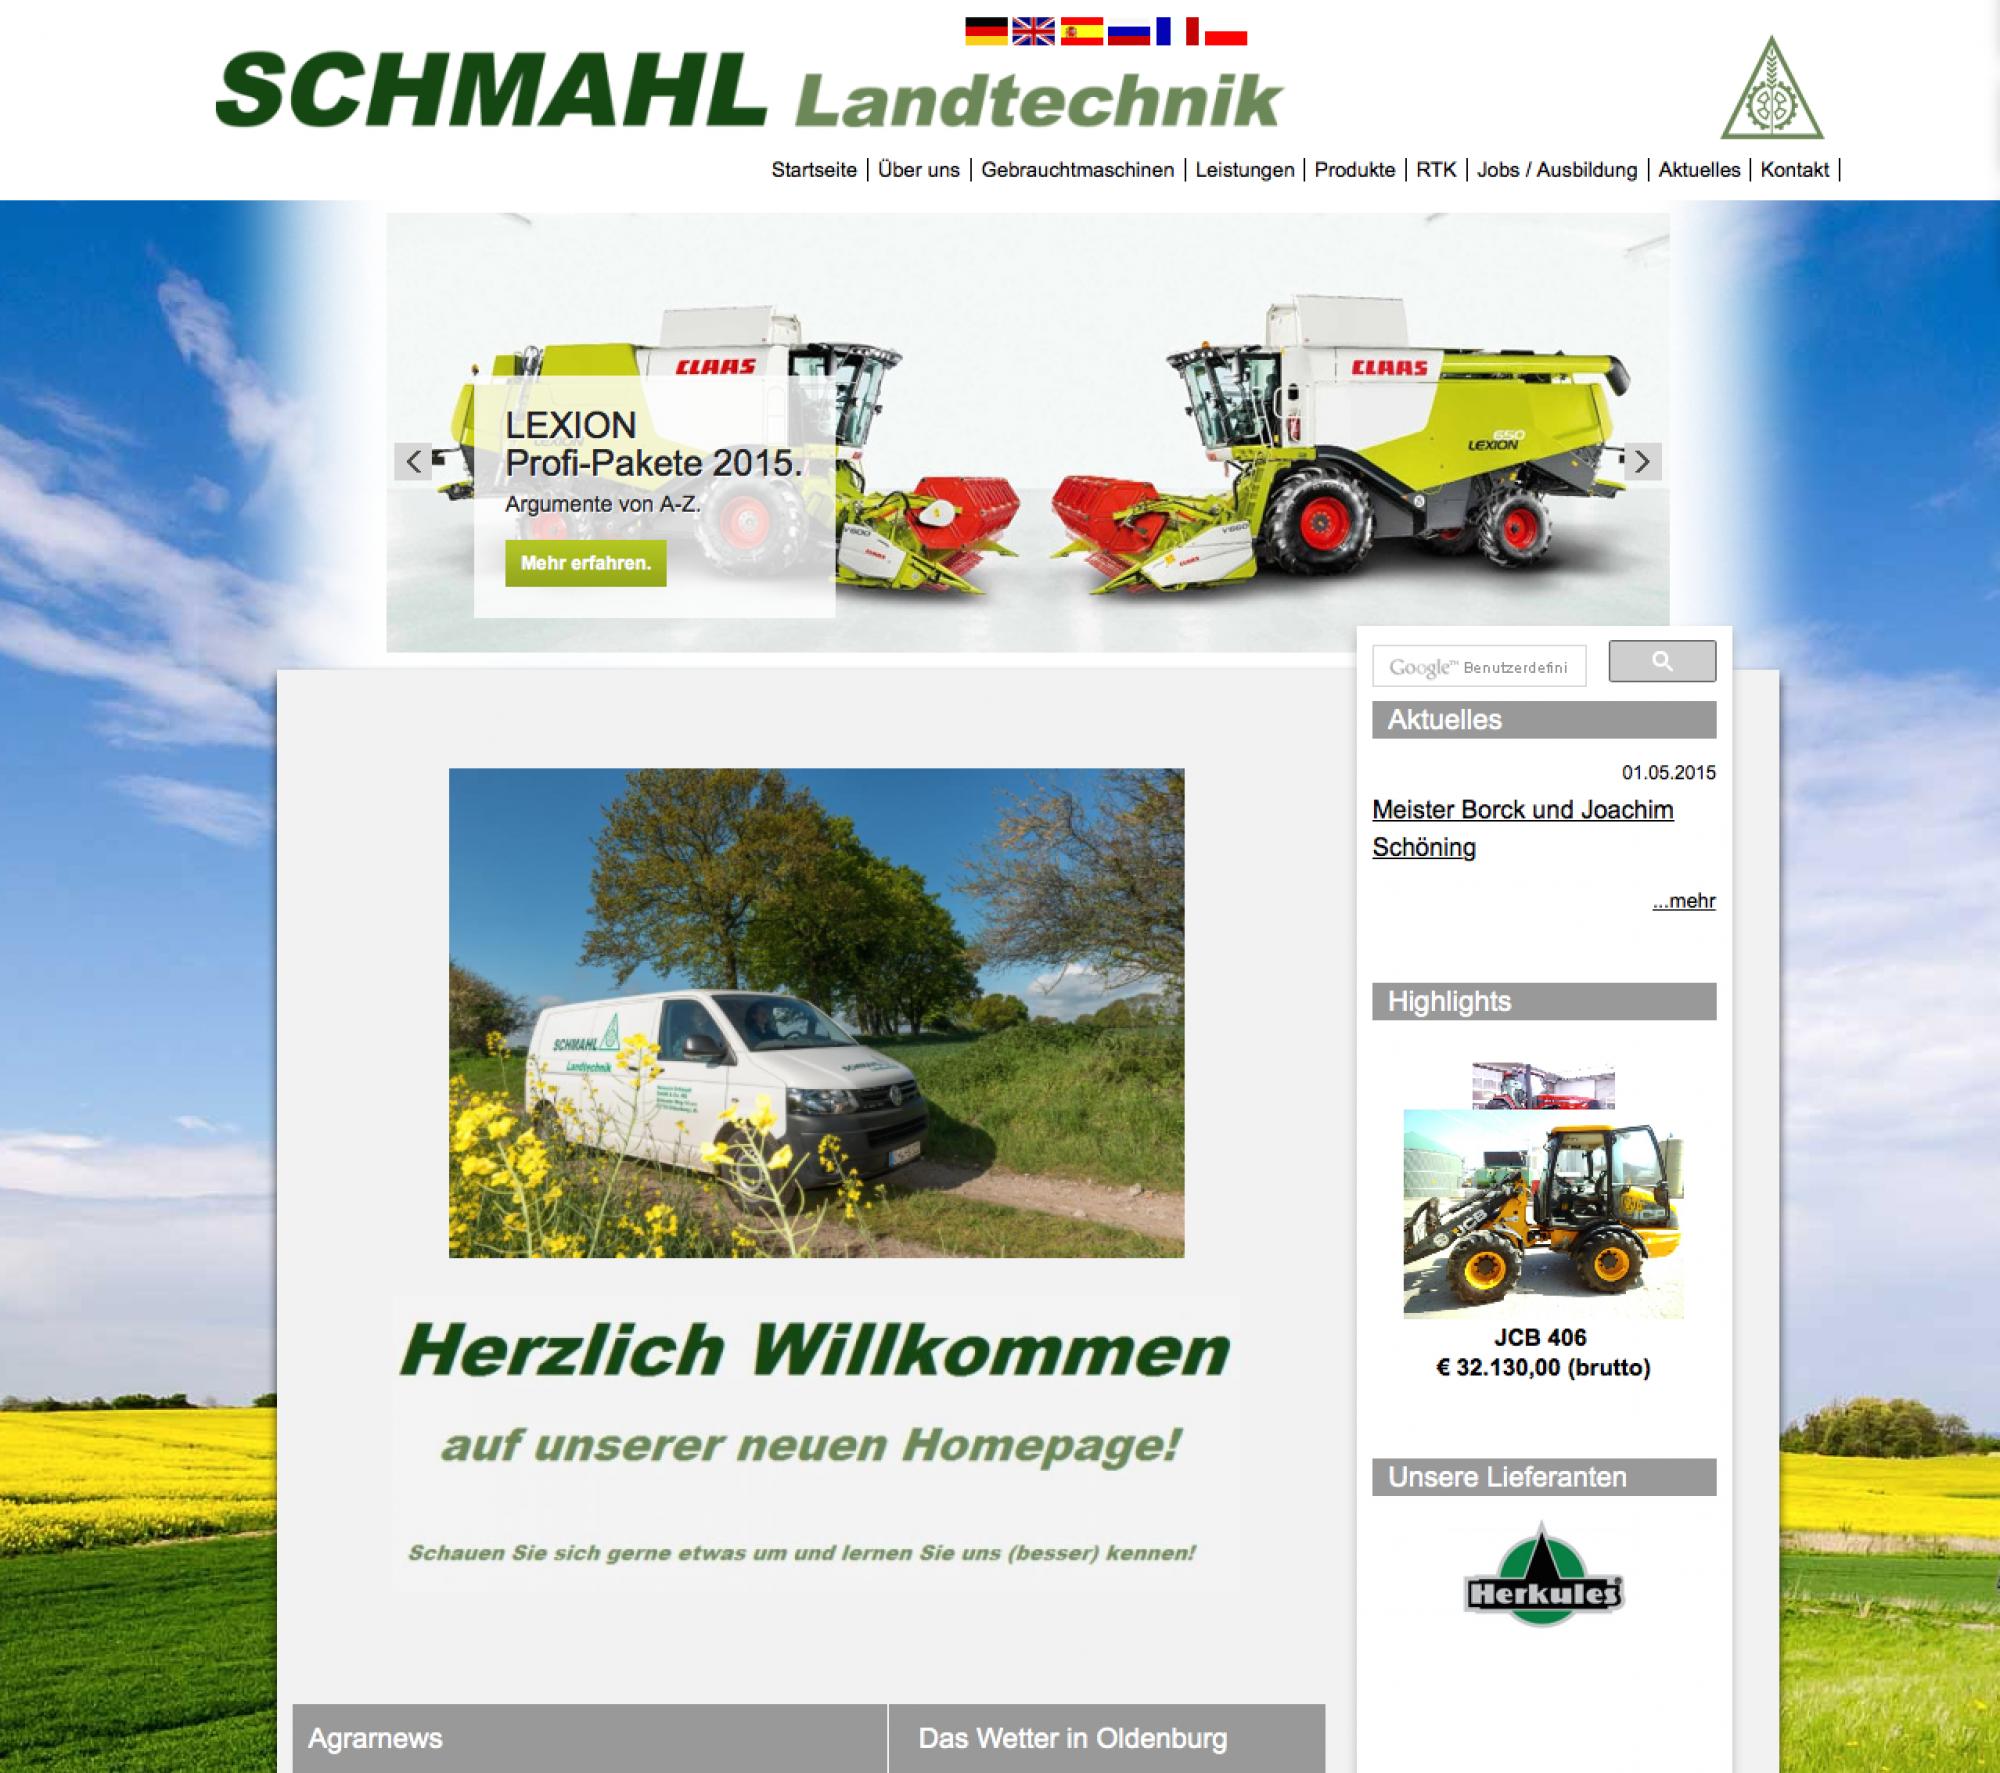 HomepageSchmahlLandtechnik.png